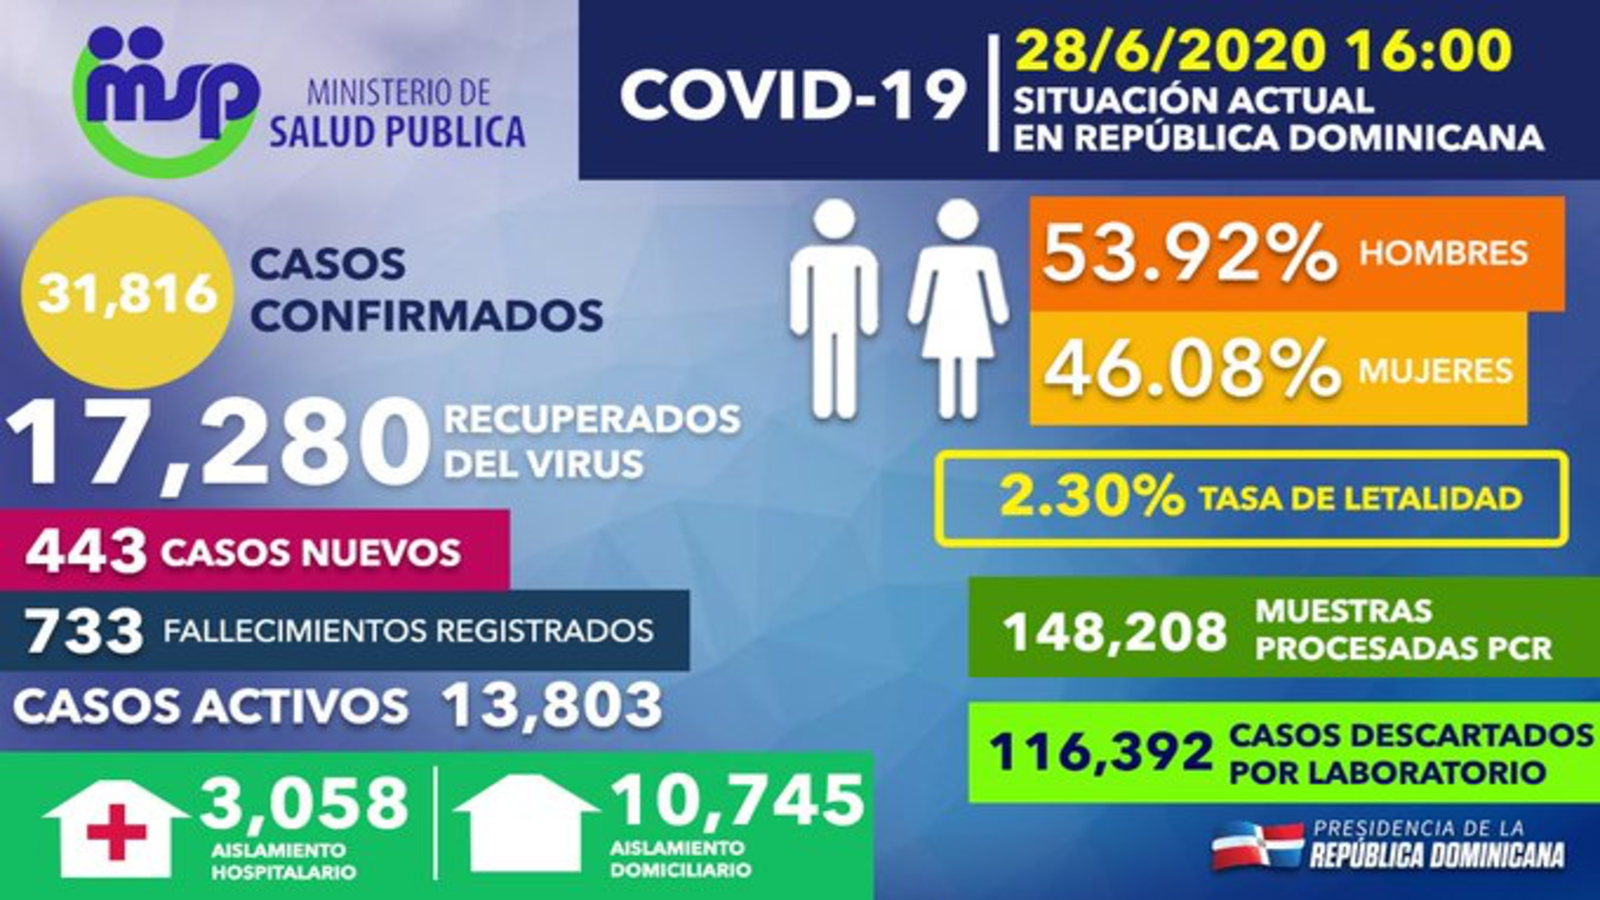 REPÚBLICA DOMINICANA: Recuperados de COVID-19 en RD ascienden a 17,280; 443 casos nuevos y más de 116 mil descartados mediante pruebas de laboratorio